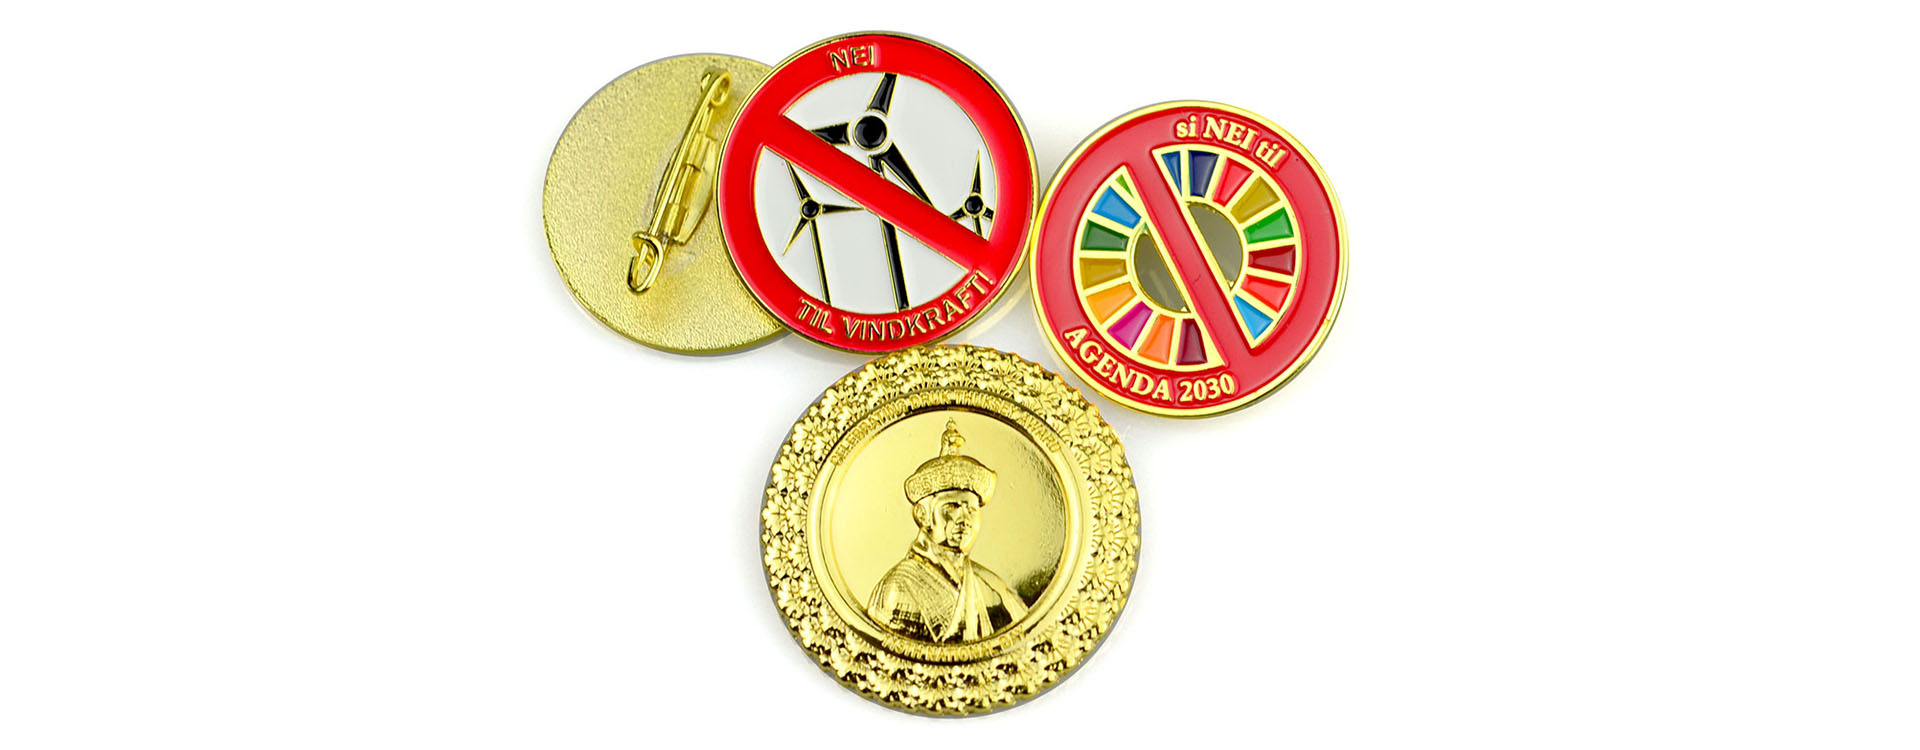 Customized Badges